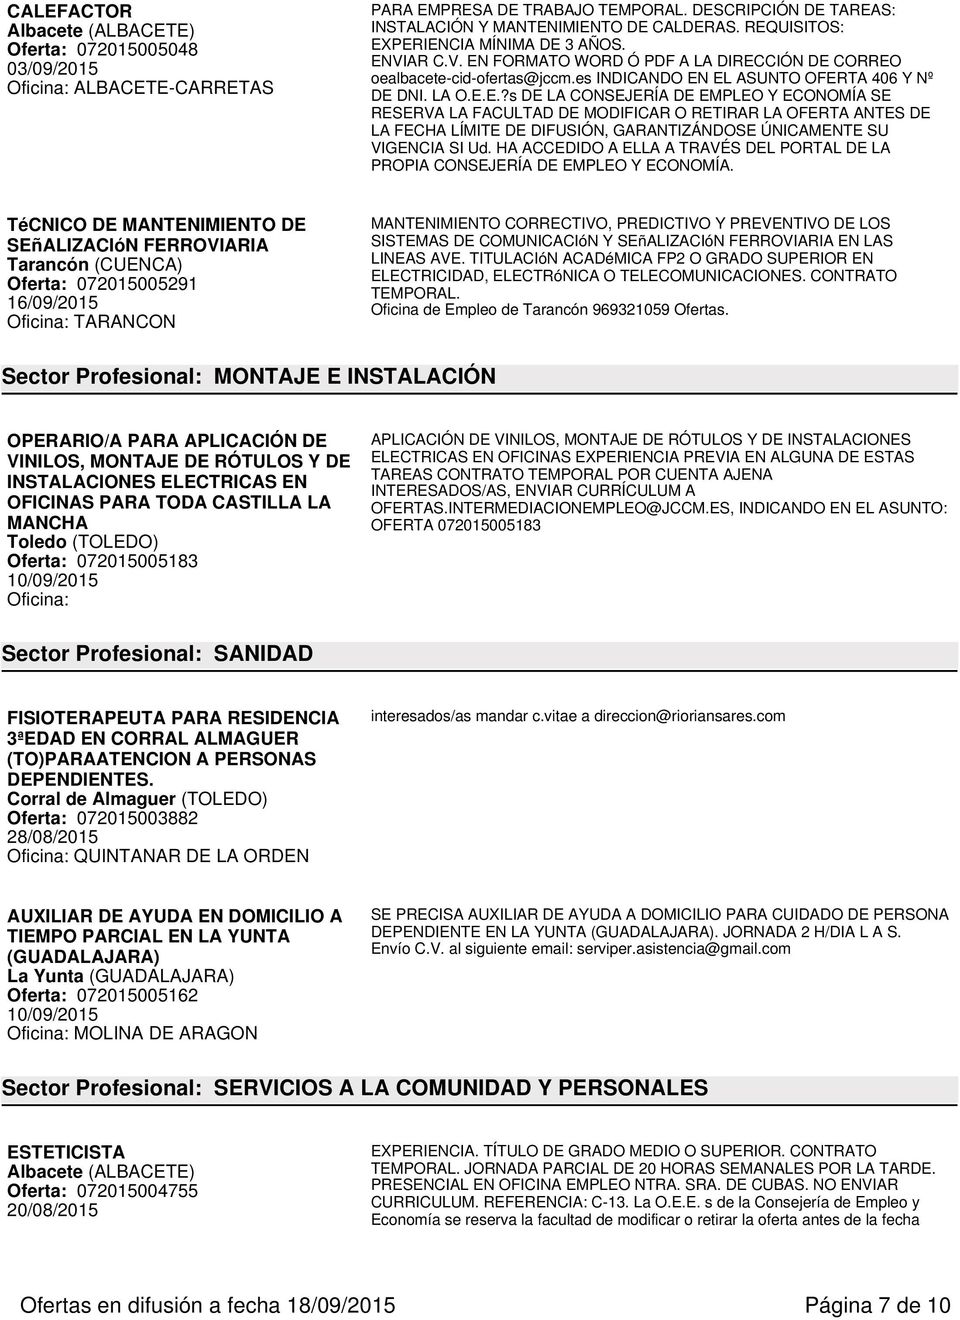 TéCNICO DE MANTENIMIENTO DE SEñALIZACIóN FERROVIARIA Tarancón (CUENCA) Oferta: 072015005291 16/09/2015 Oficina: TARANCON MANTENIMIENTO CORRECTIVO, PREDICTIVO Y PREVENTIVO DE LOS SISTEMAS DE